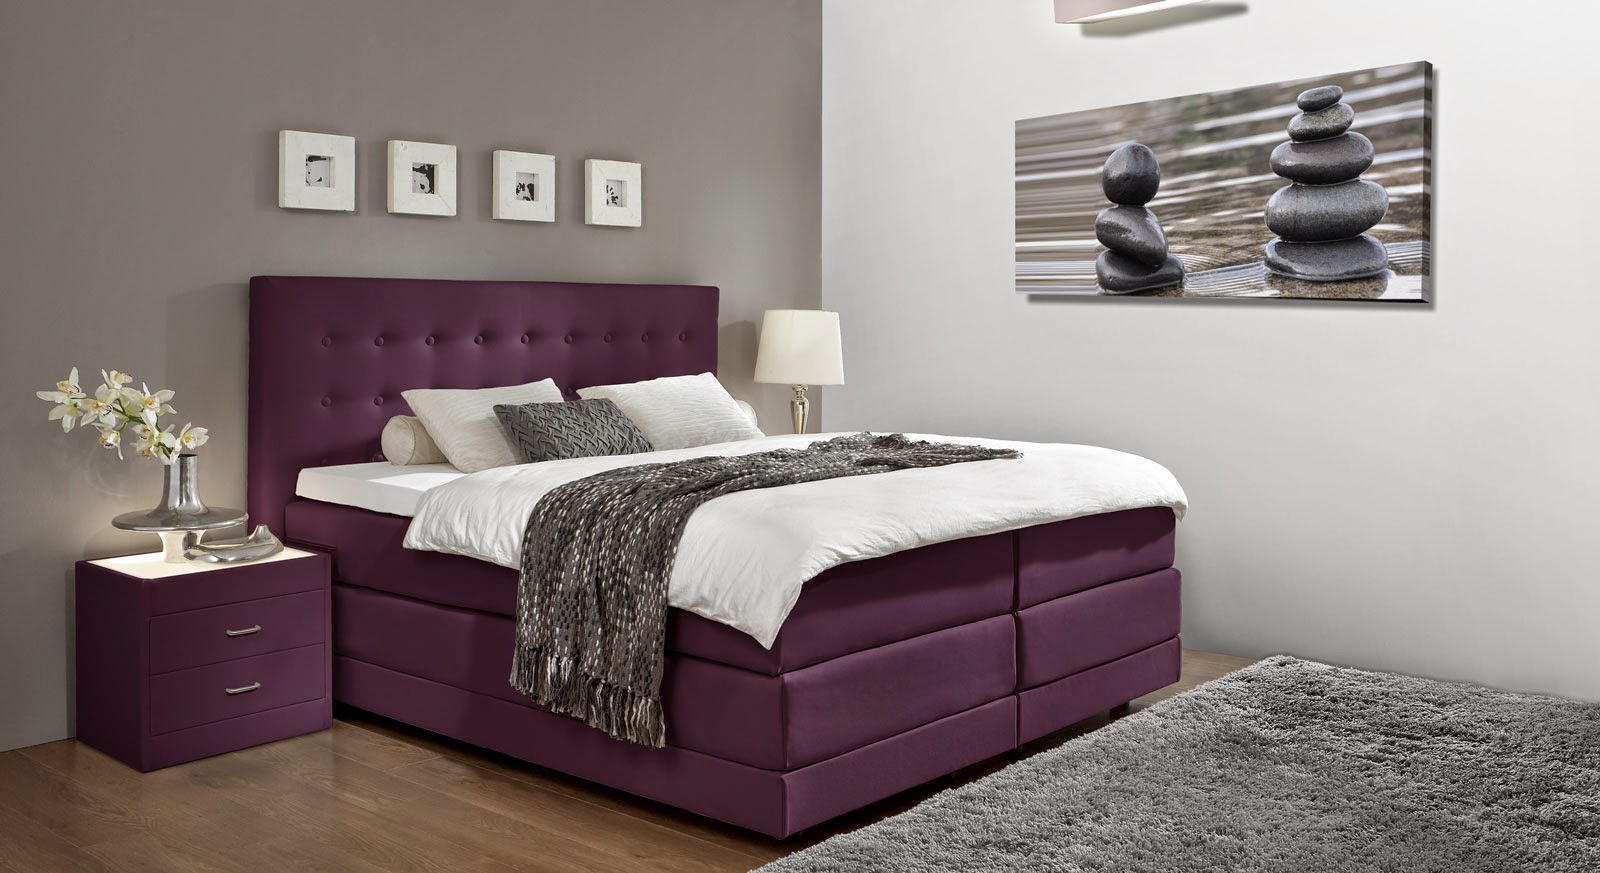 Habitaciones en violeta y gris plata - Ideas para decorar dormitorios